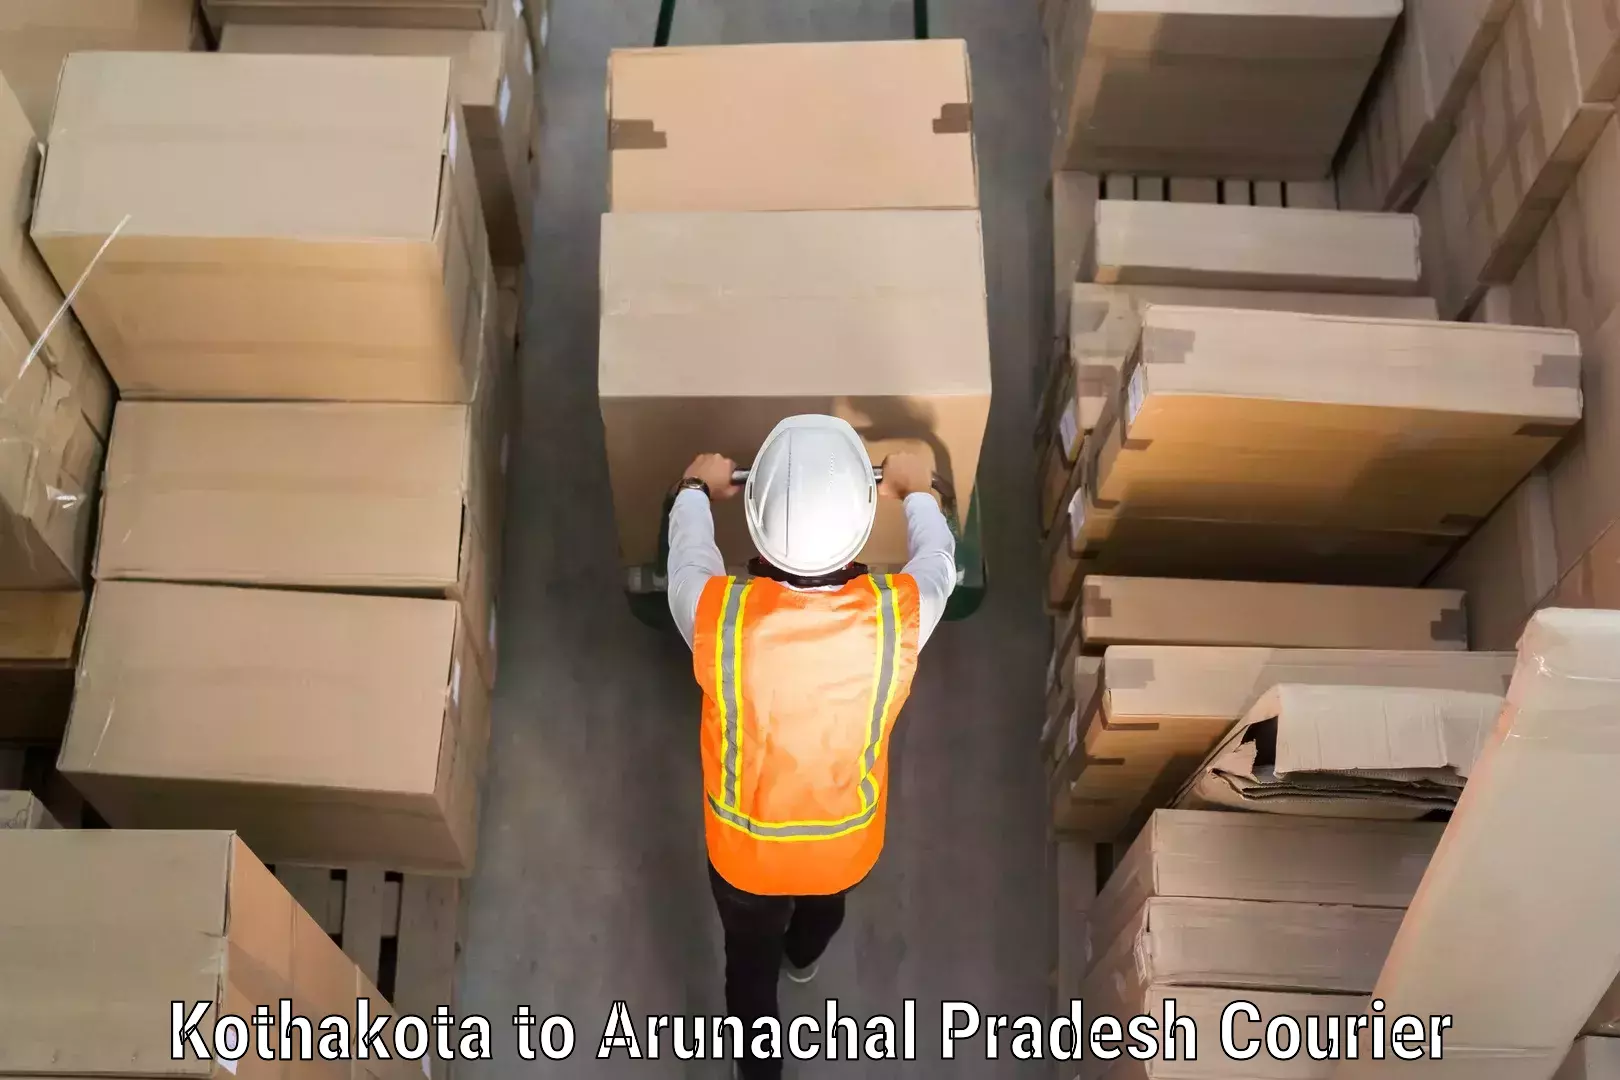 Luggage shipment tracking in Kothakota to Arunachal Pradesh